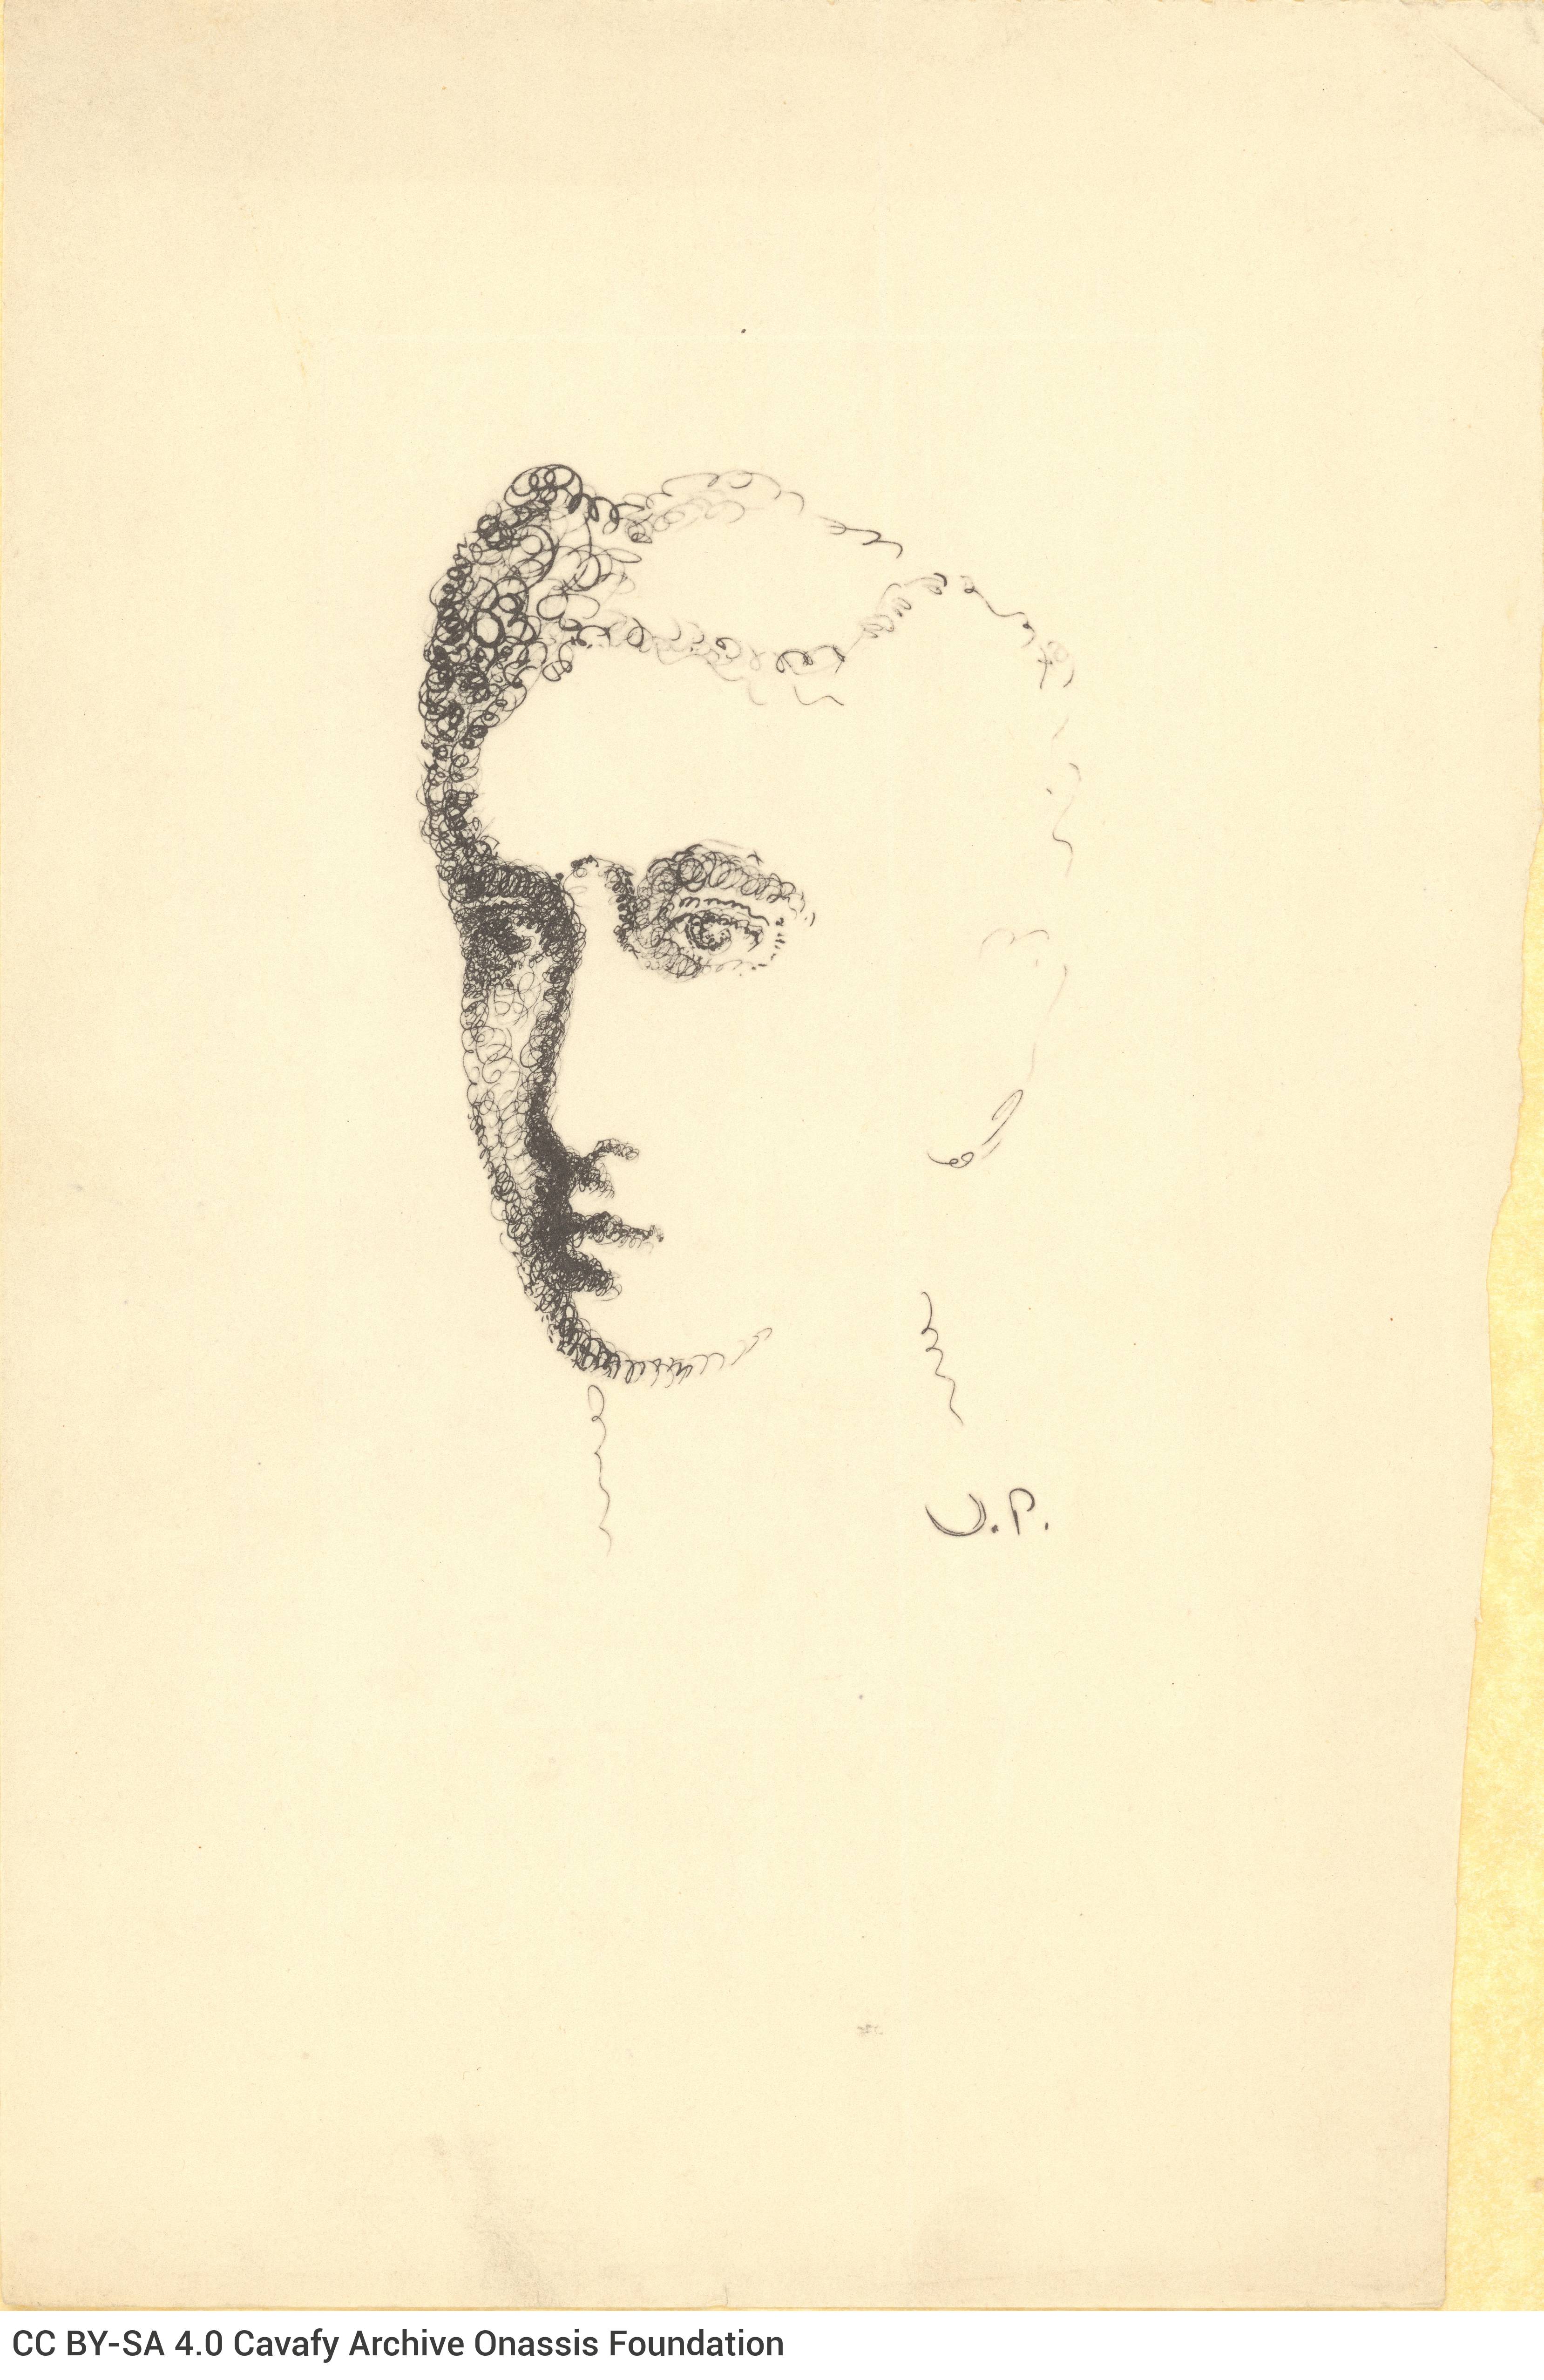 Αναπαραγωγή (ίσως μεταξοτυπία) πορτρέτου του Καβάφη σε νεαρή ηλικία.